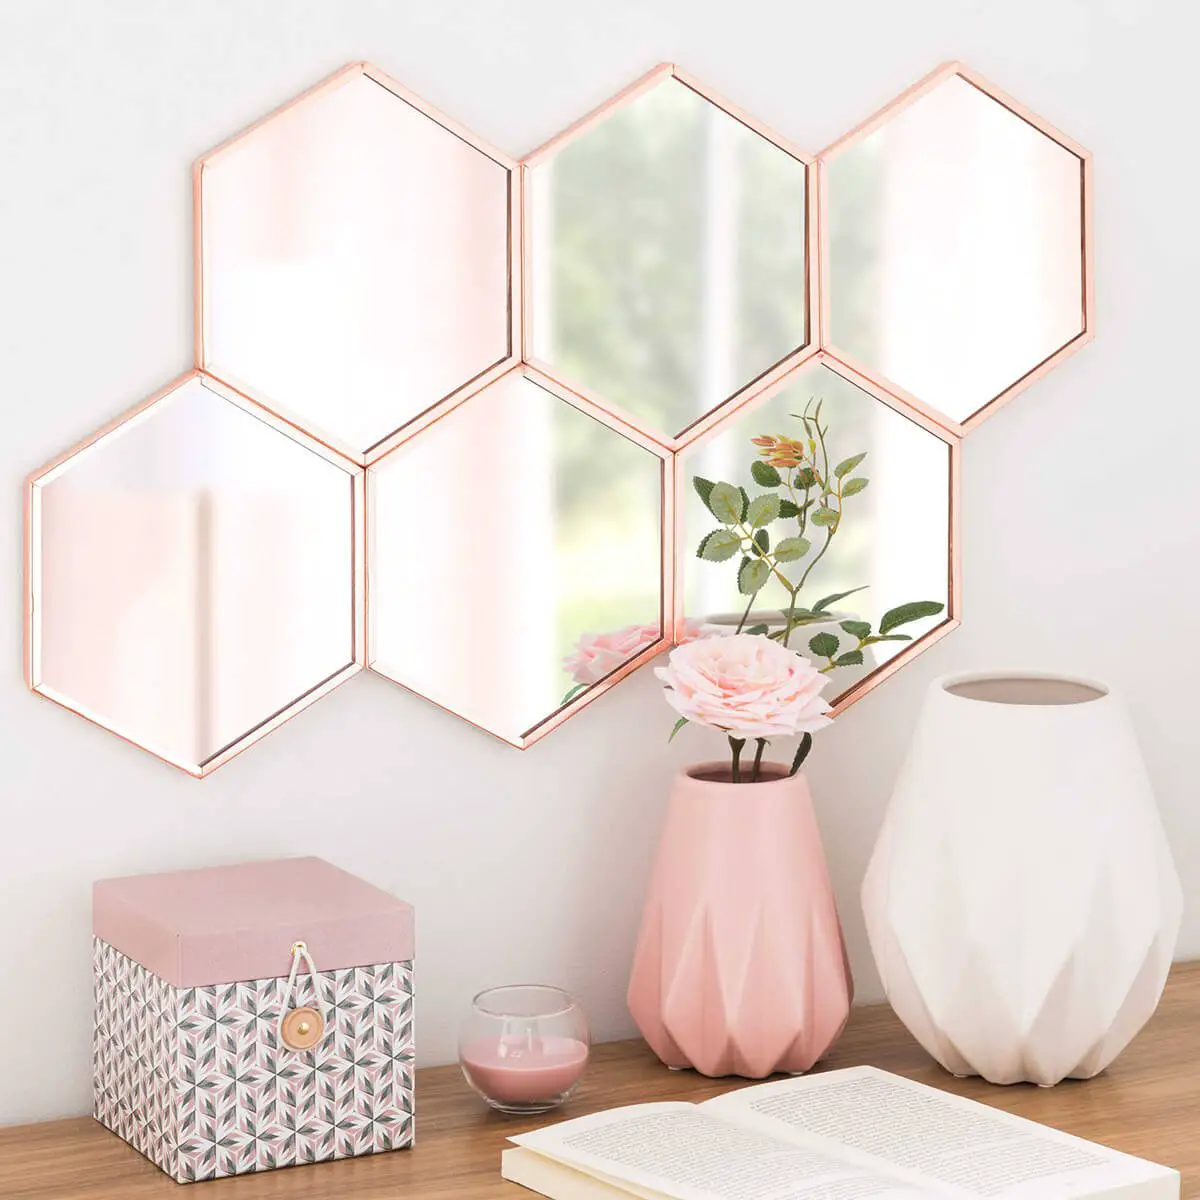 Hexagonal mirrors